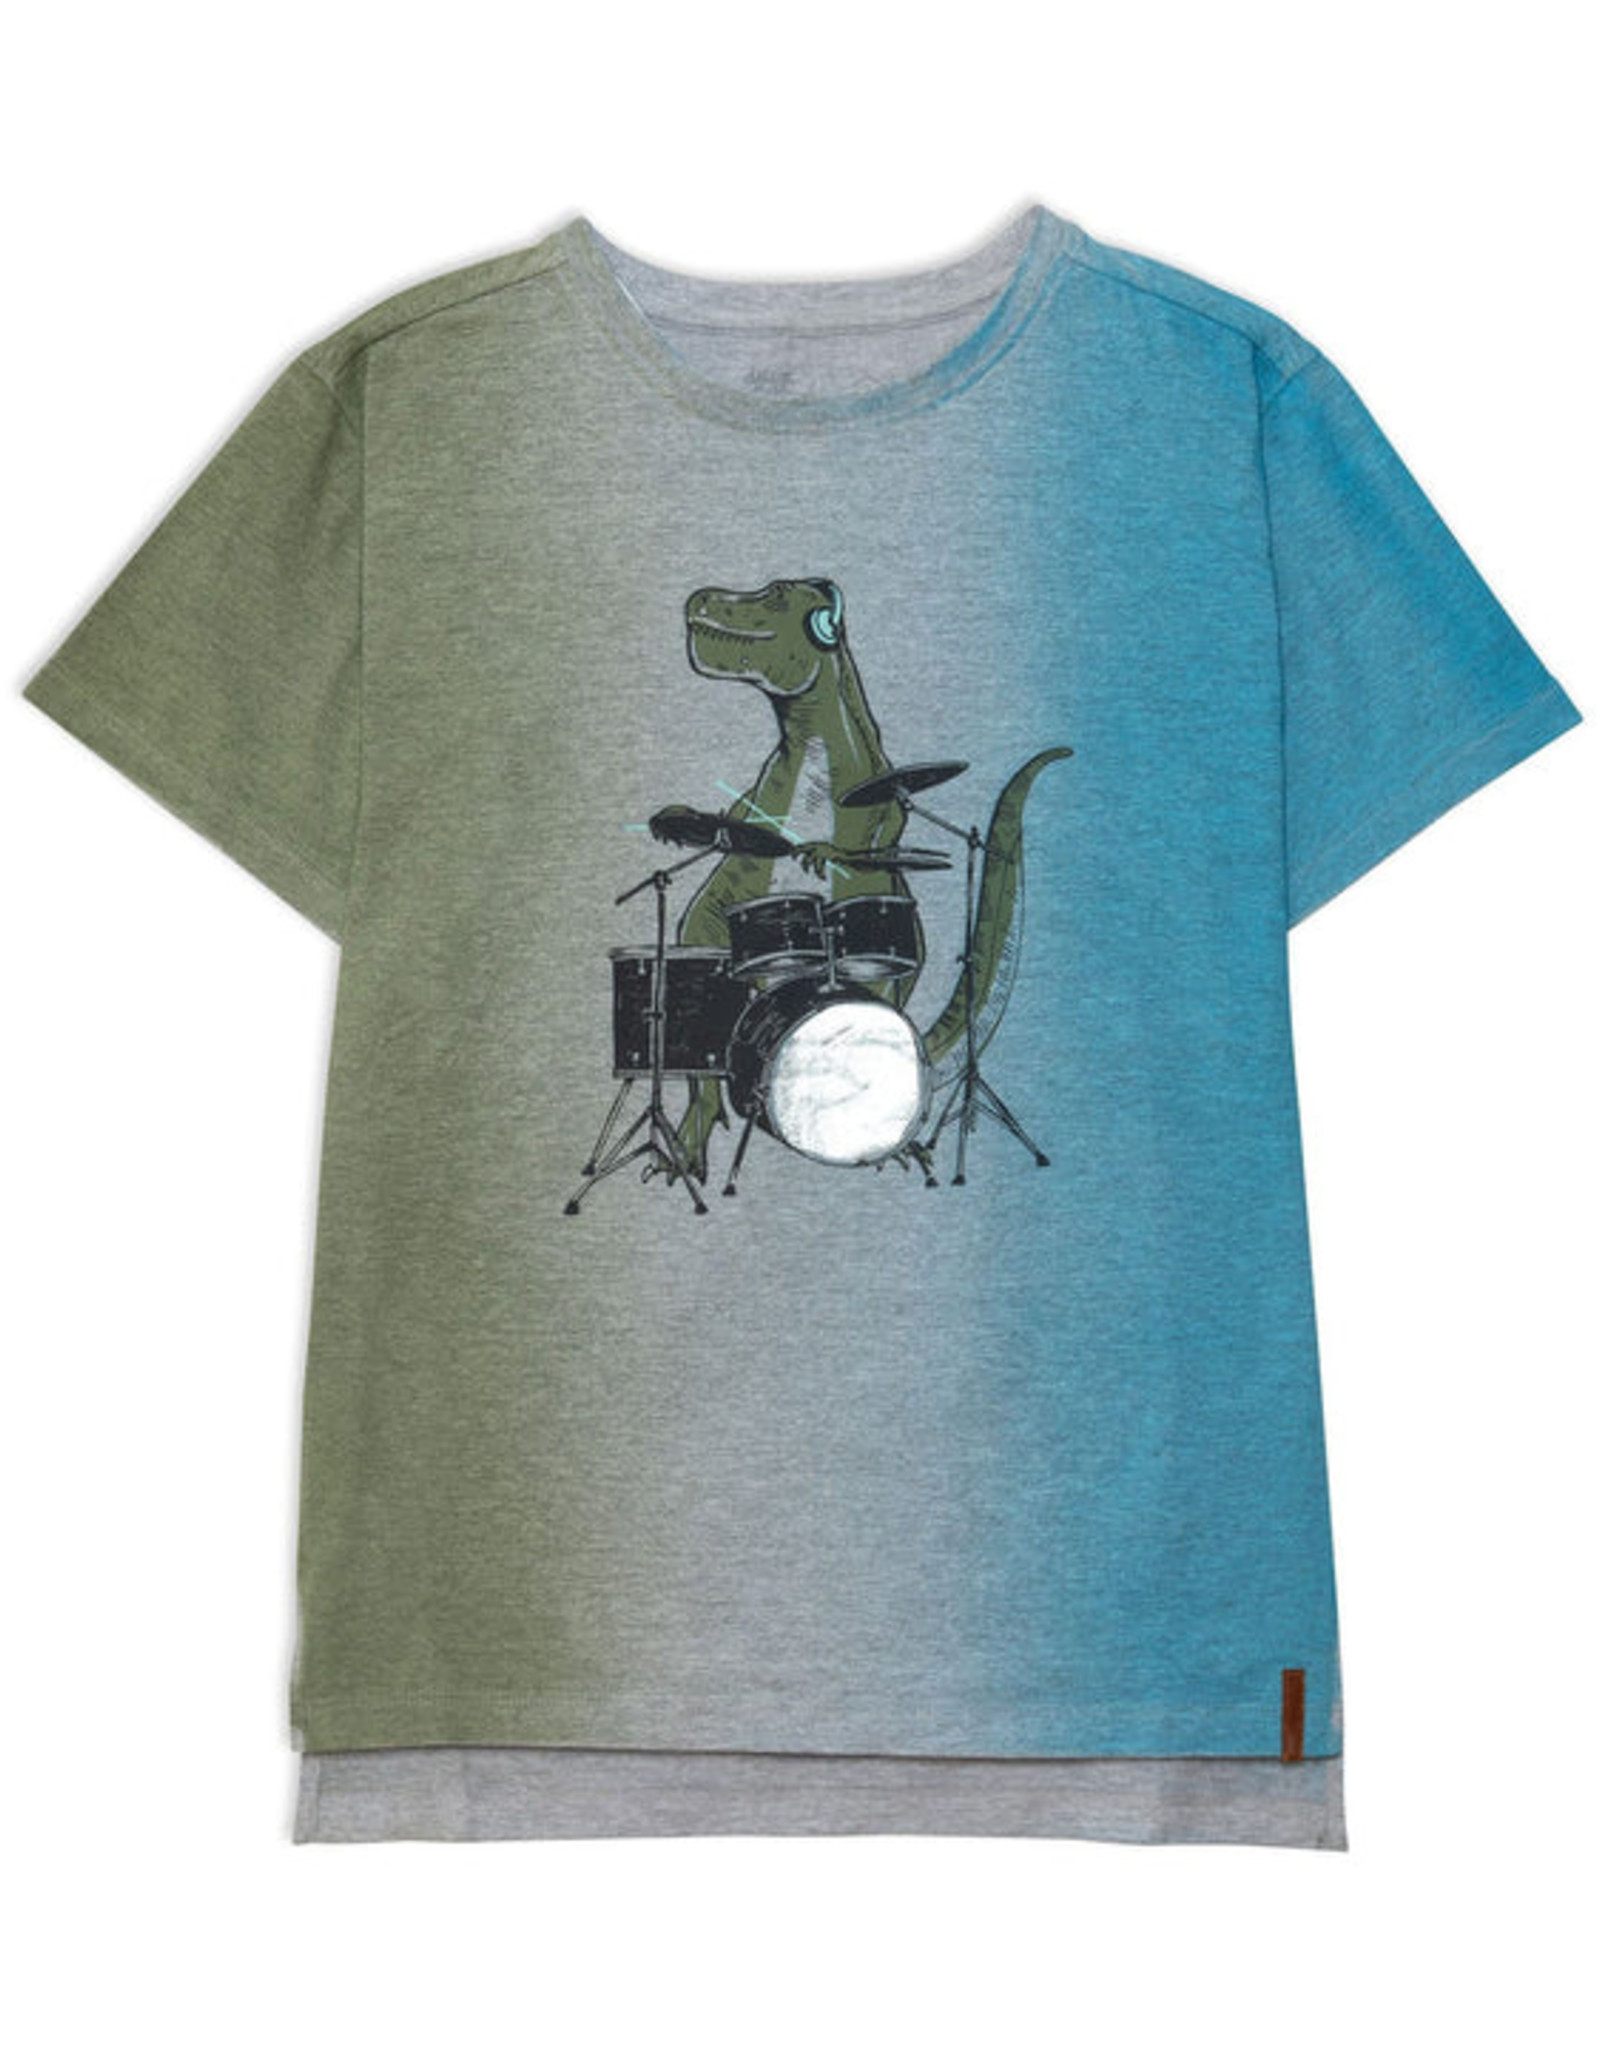 DeuxParDeux SP22 B Dino On Drums T-Shirt